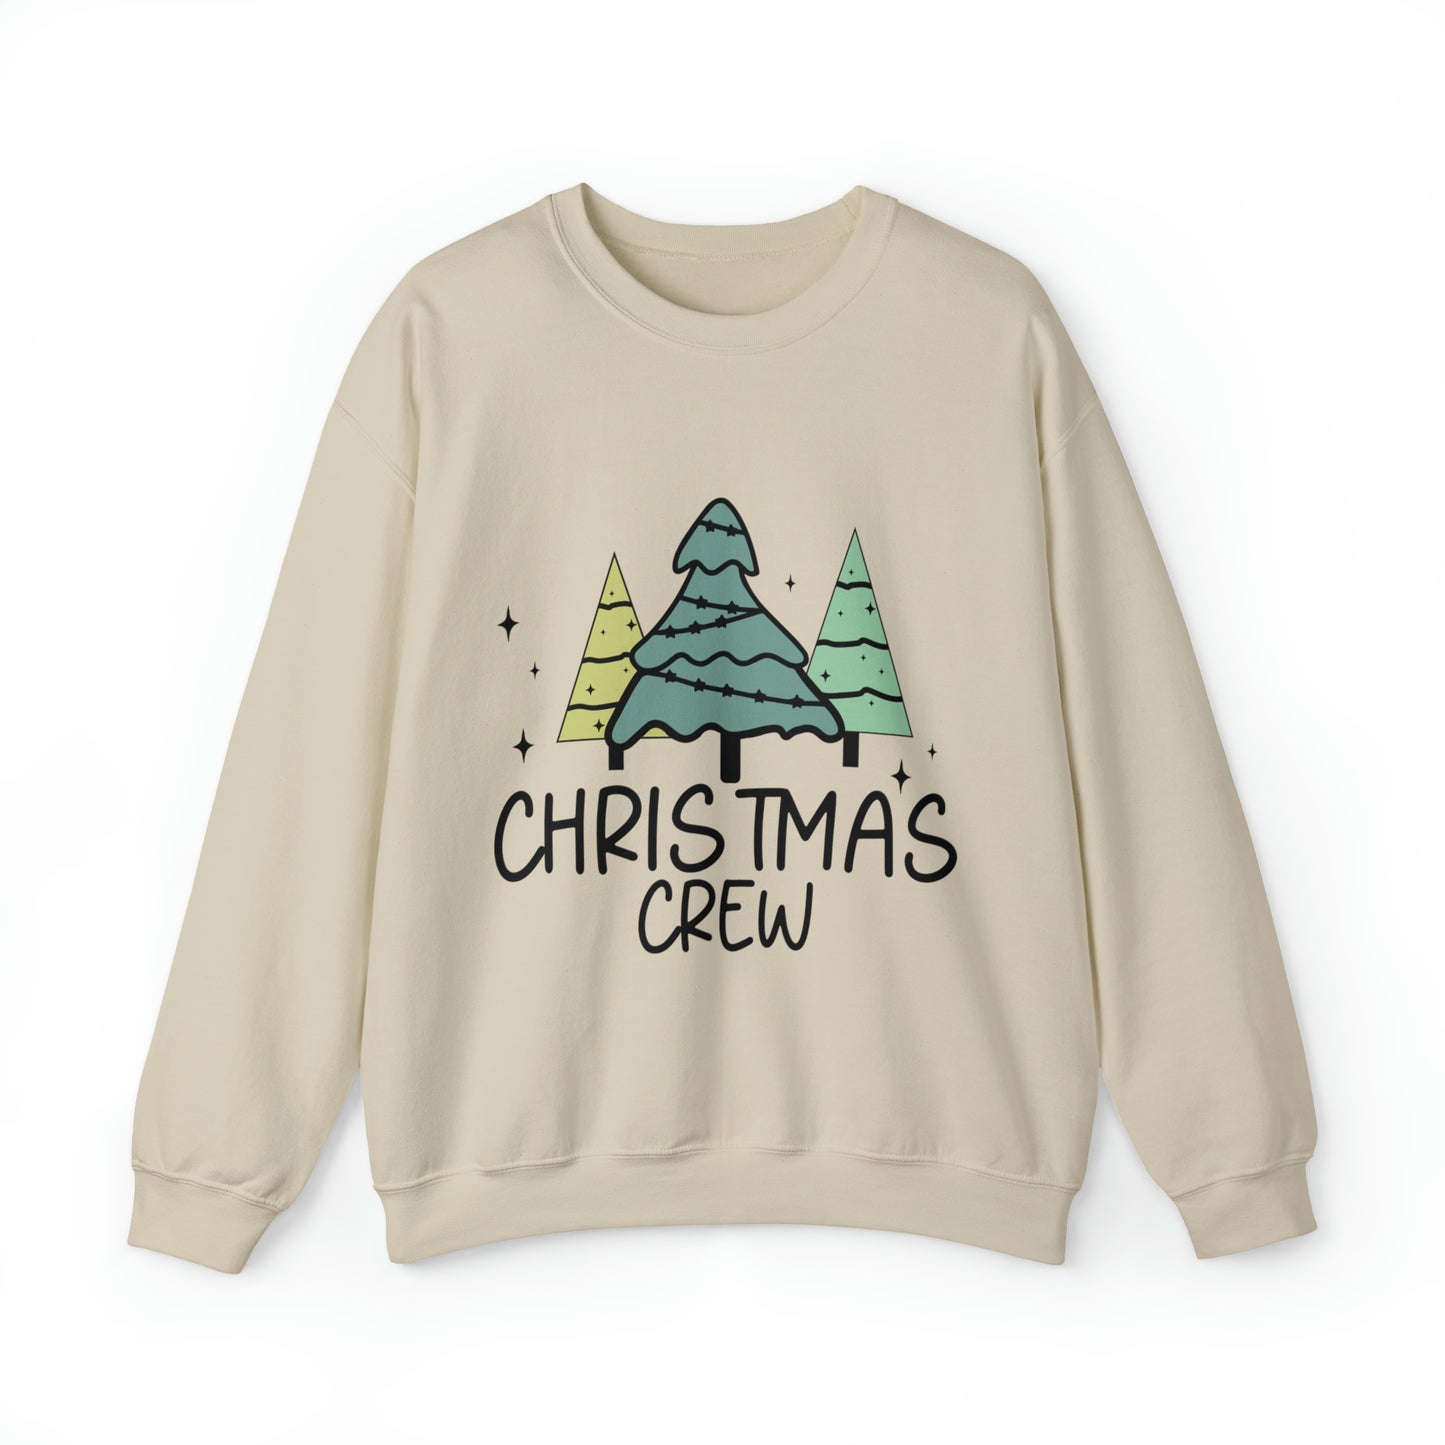 Christmas Crew Adult Unisex Christmas Crewneck Sweatshirt